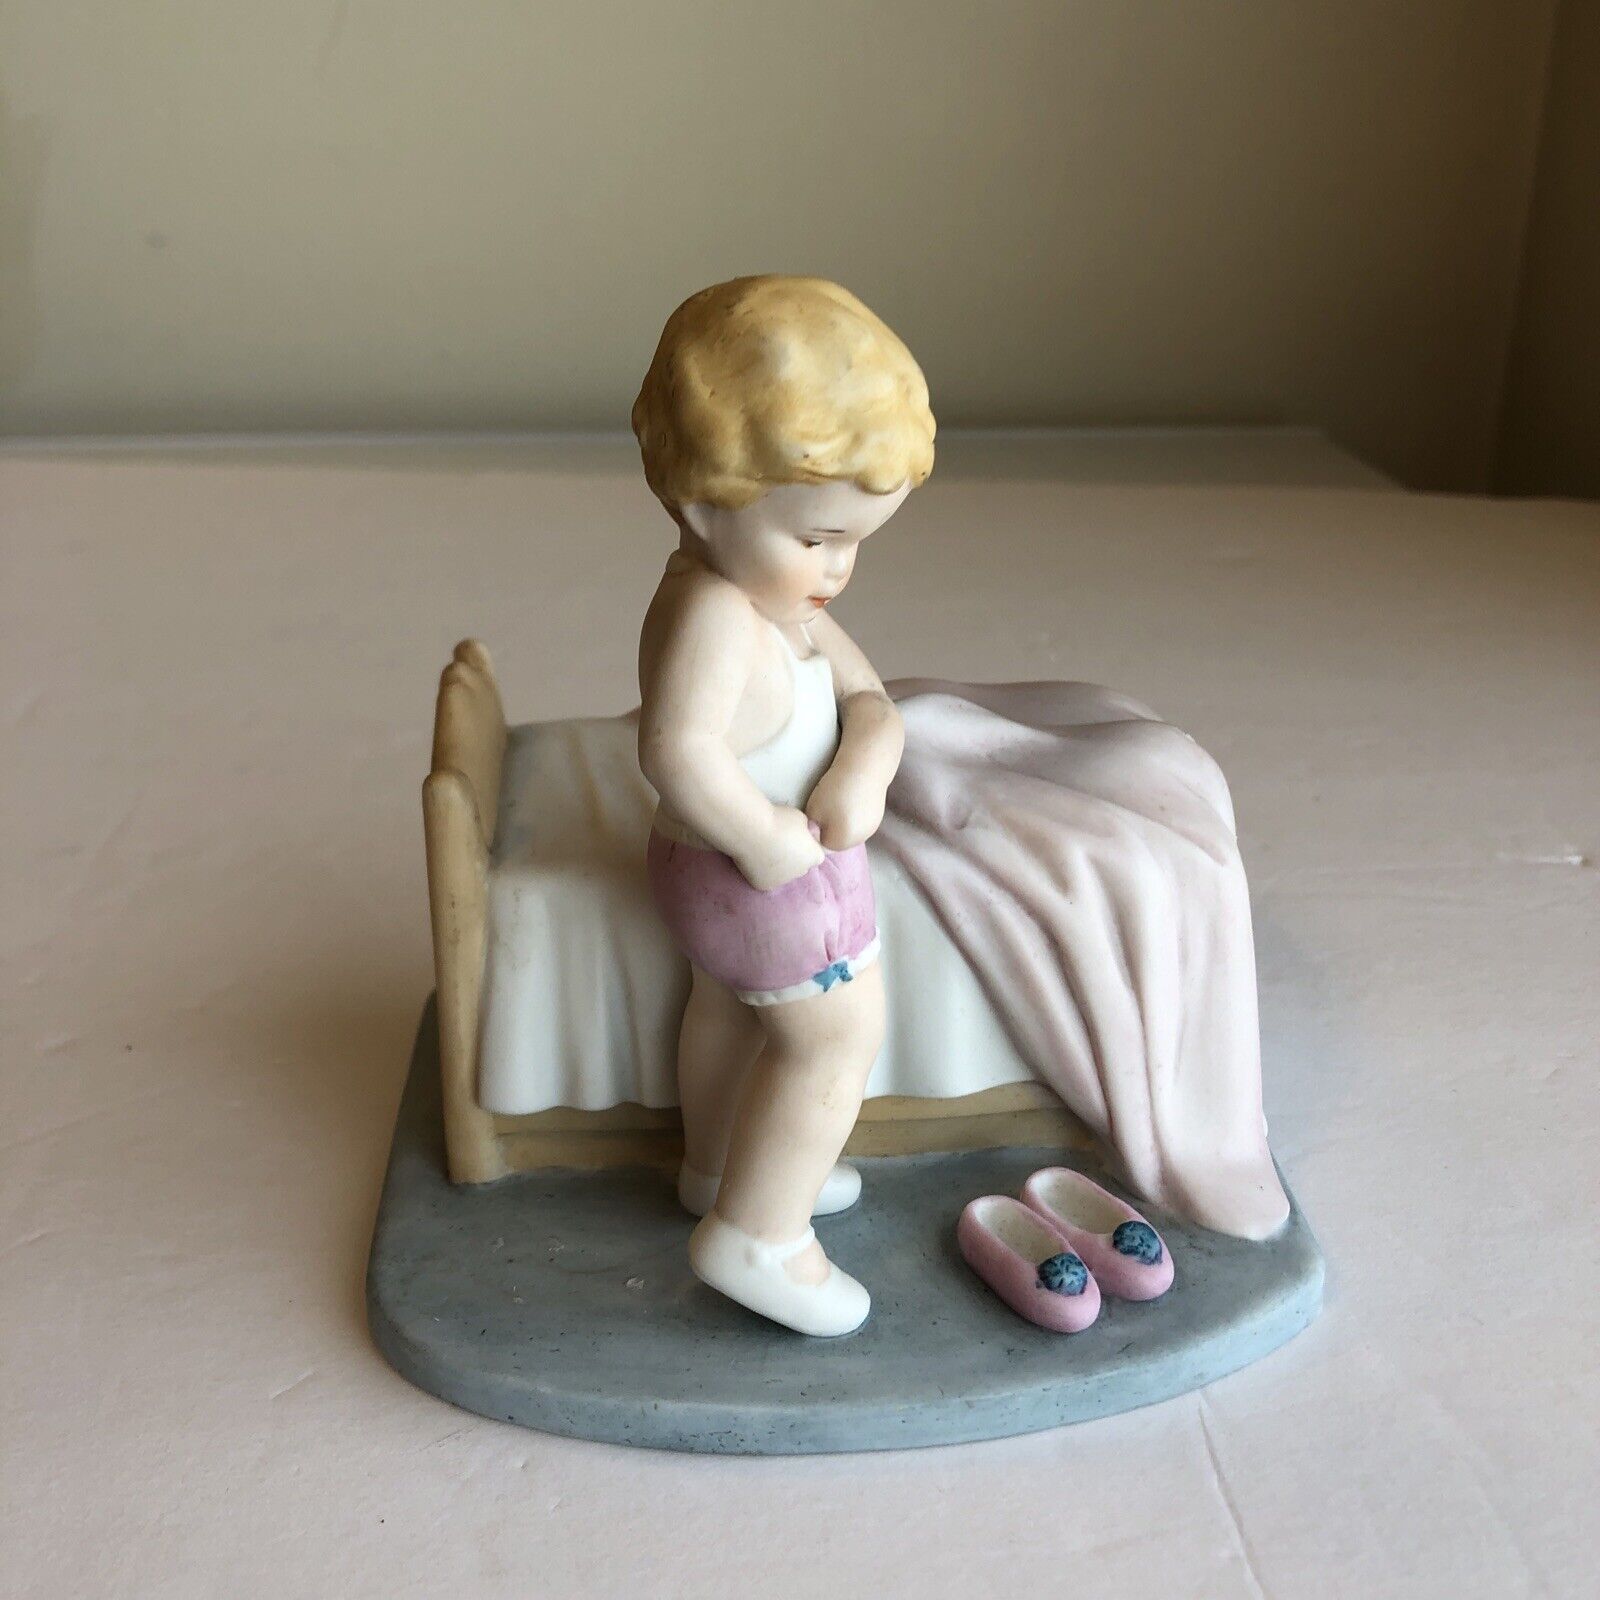 1985 Bessie Pease Gutmann Limited Edition Figurine Just A Little Bit Independent